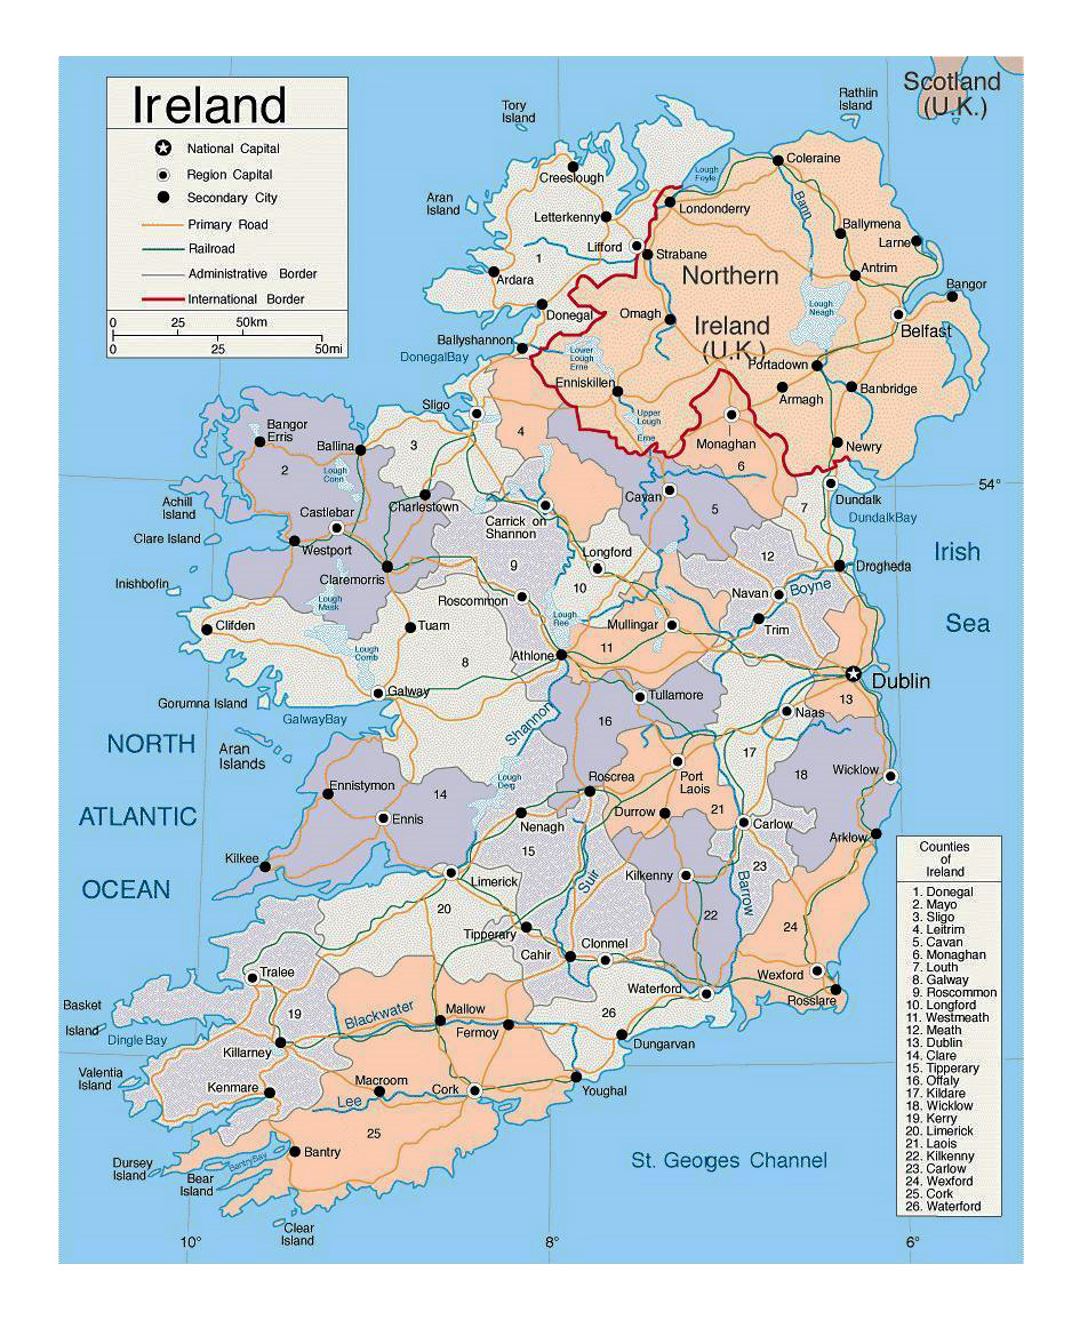 Mapa político y administrativo detallado de Irlanda con las carreteras y ciudades principales